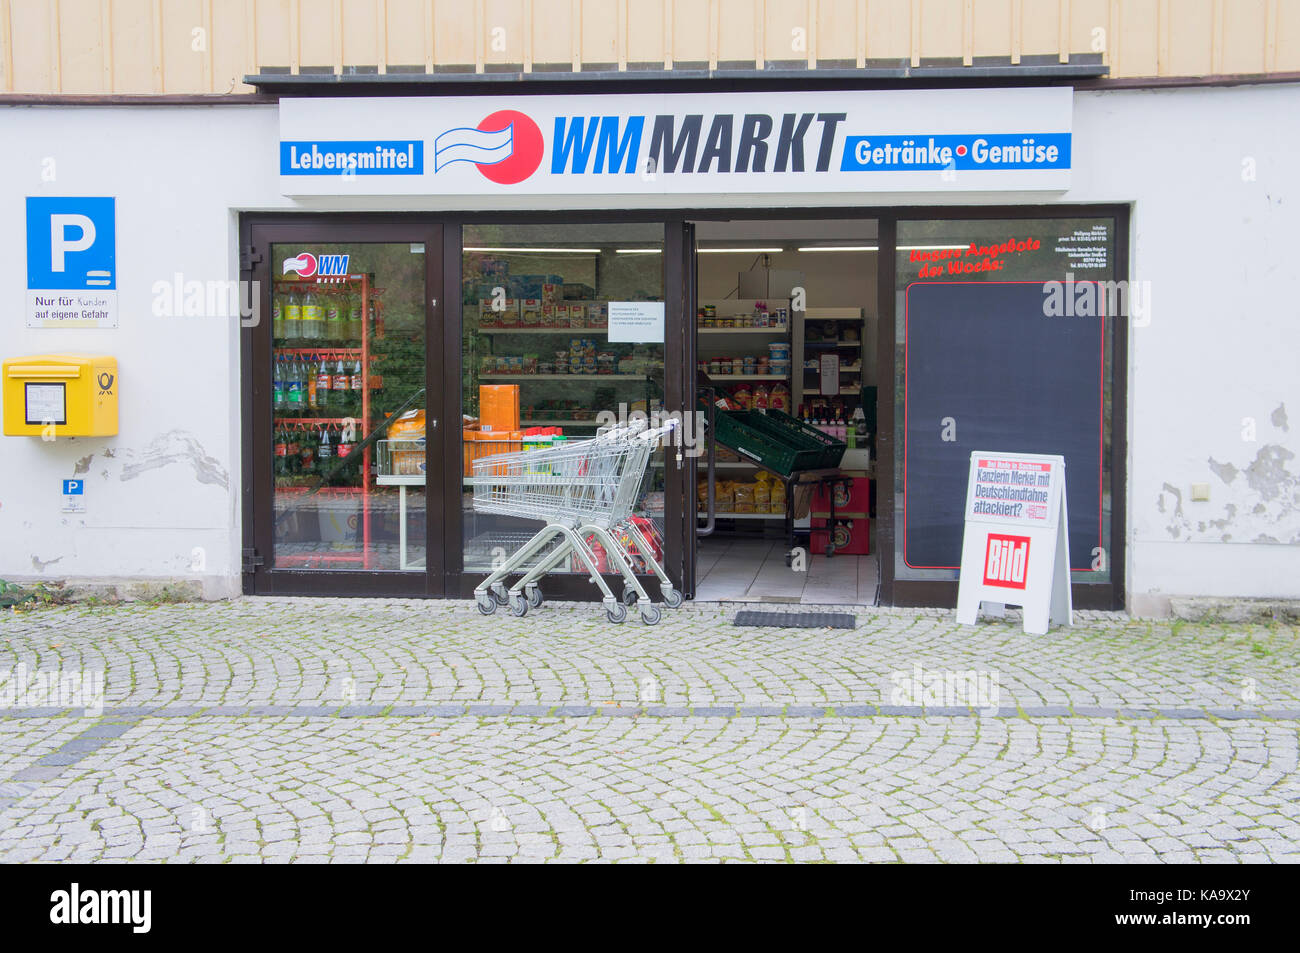 Bild newspaper placard with headline Kanzlerin Merkel mit Deutschlandfahne attackiert? in front of WM MARKT shop in Kurort Oybin, Germany, September 19, 2017. Stock Photo